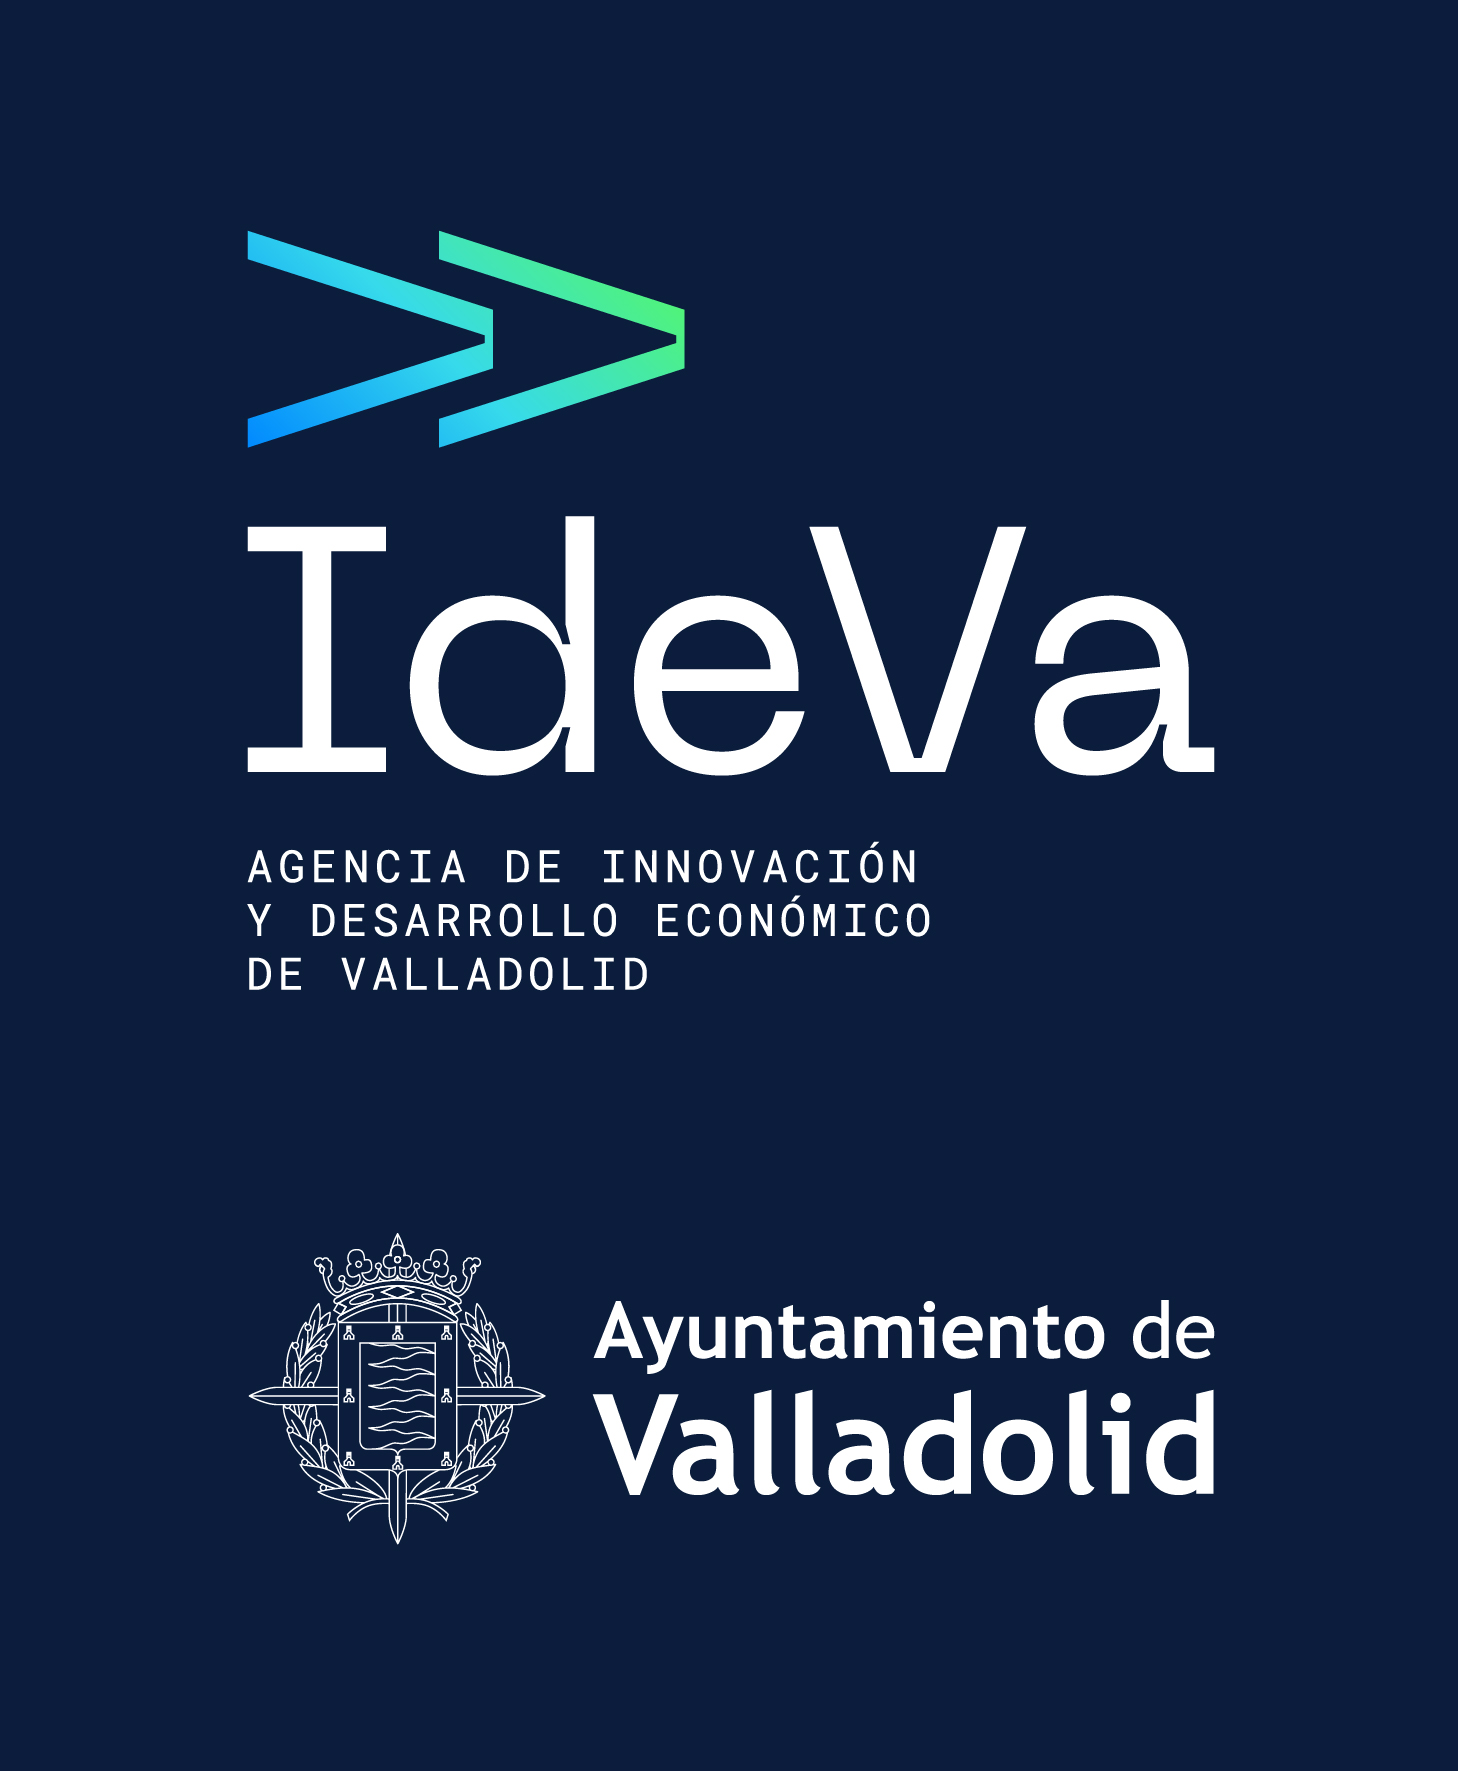 Agencia de Innovación y Desarrollo Económico de Valladolid